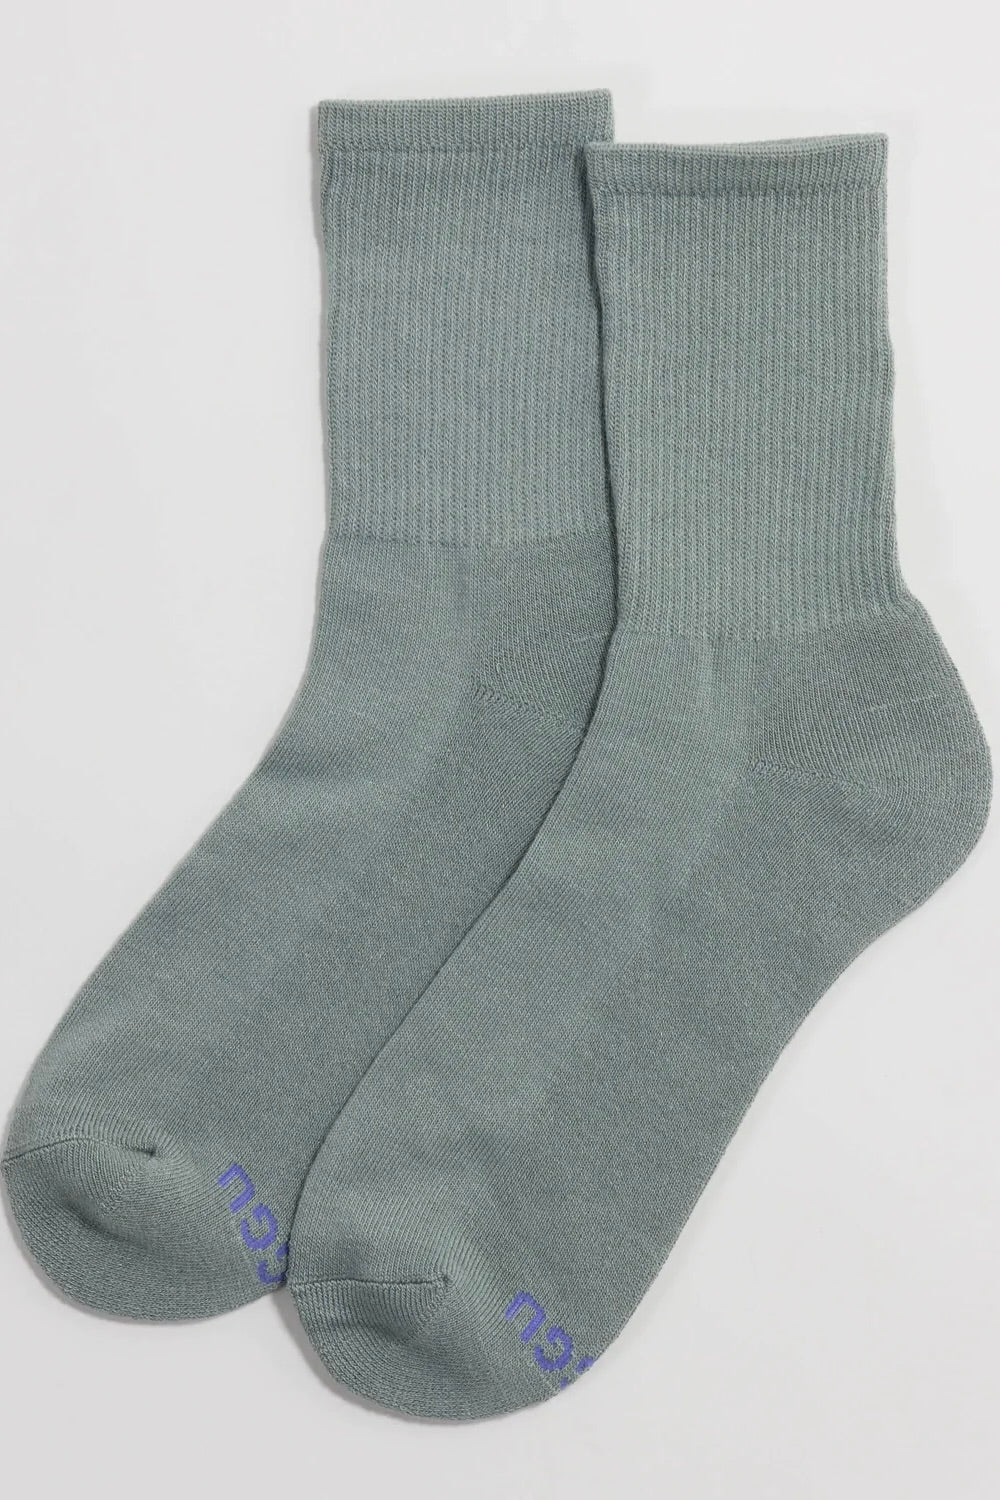 Baggu Ribbed Sock / Laurel